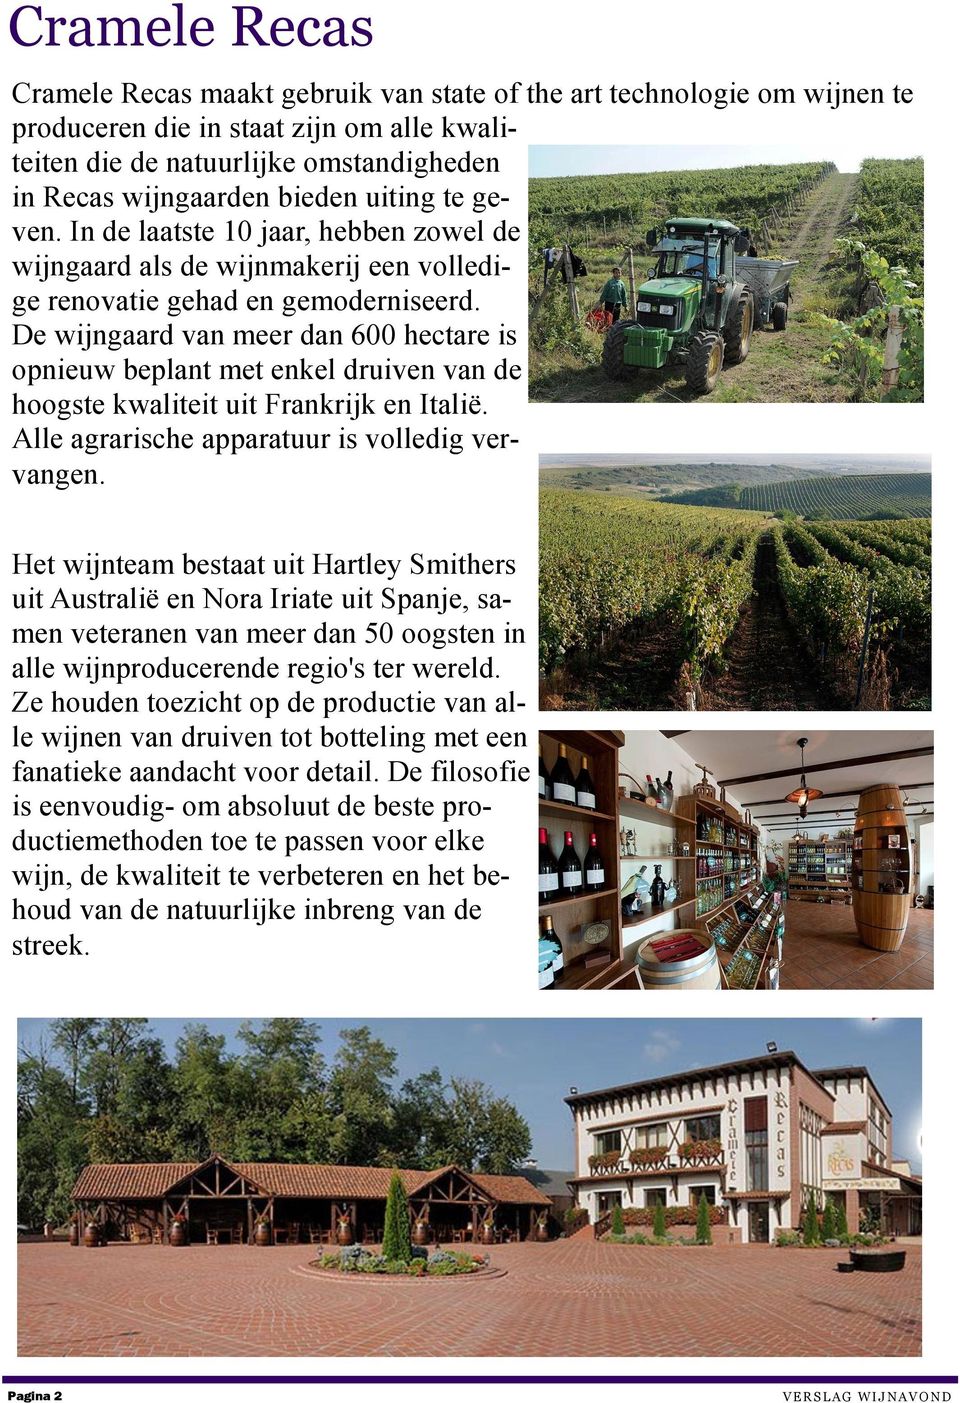 De wijngaard van meer dan 600 hectare is opnieuw beplant met enkel druiven van de hoogste kwaliteit uit Frankrijk en Italië. Alle agrarische apparatuur is volledig vervangen.